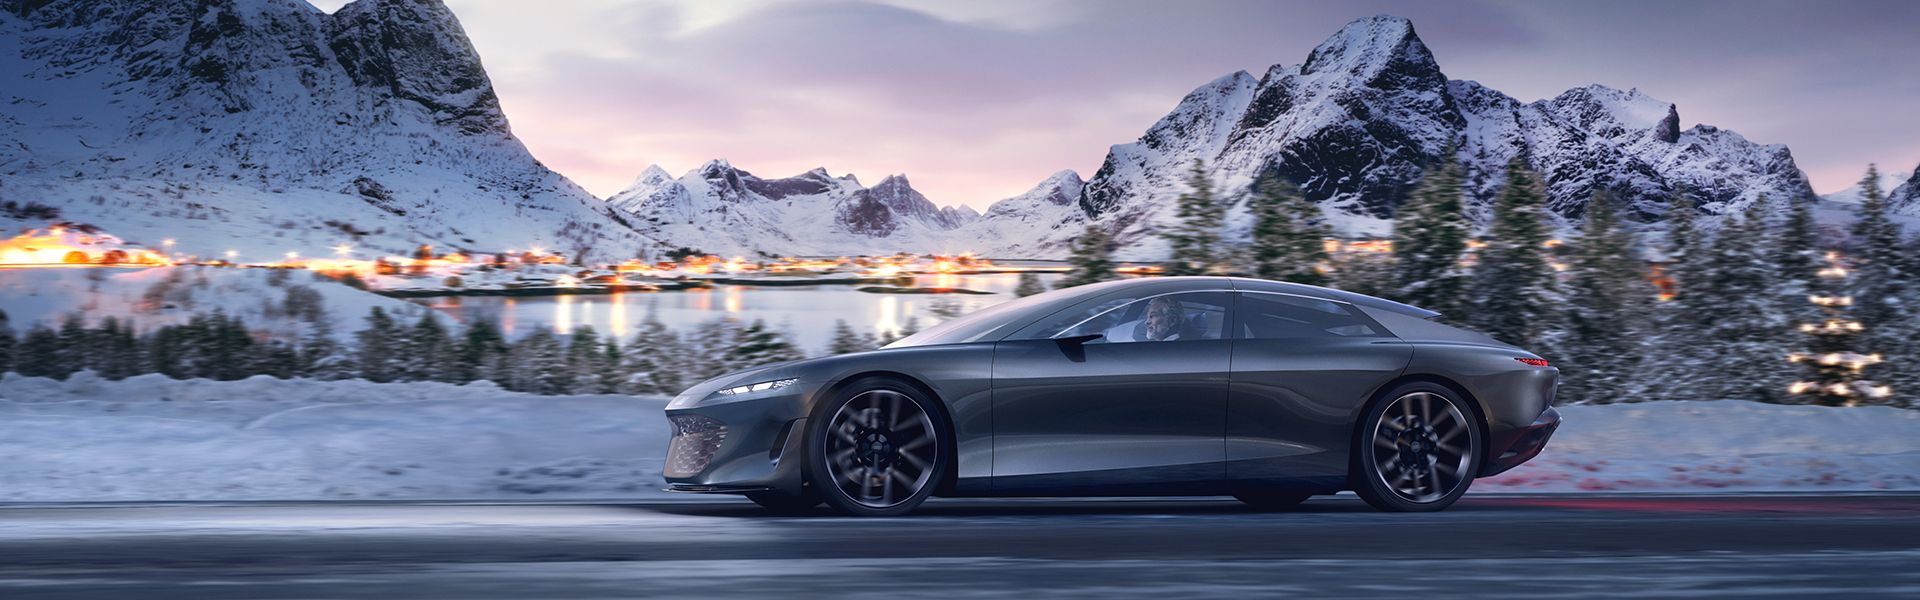 Der Audi grandsphere concept fährt auf der Straße vor einer verschneiten Landschaft mit Bergen.